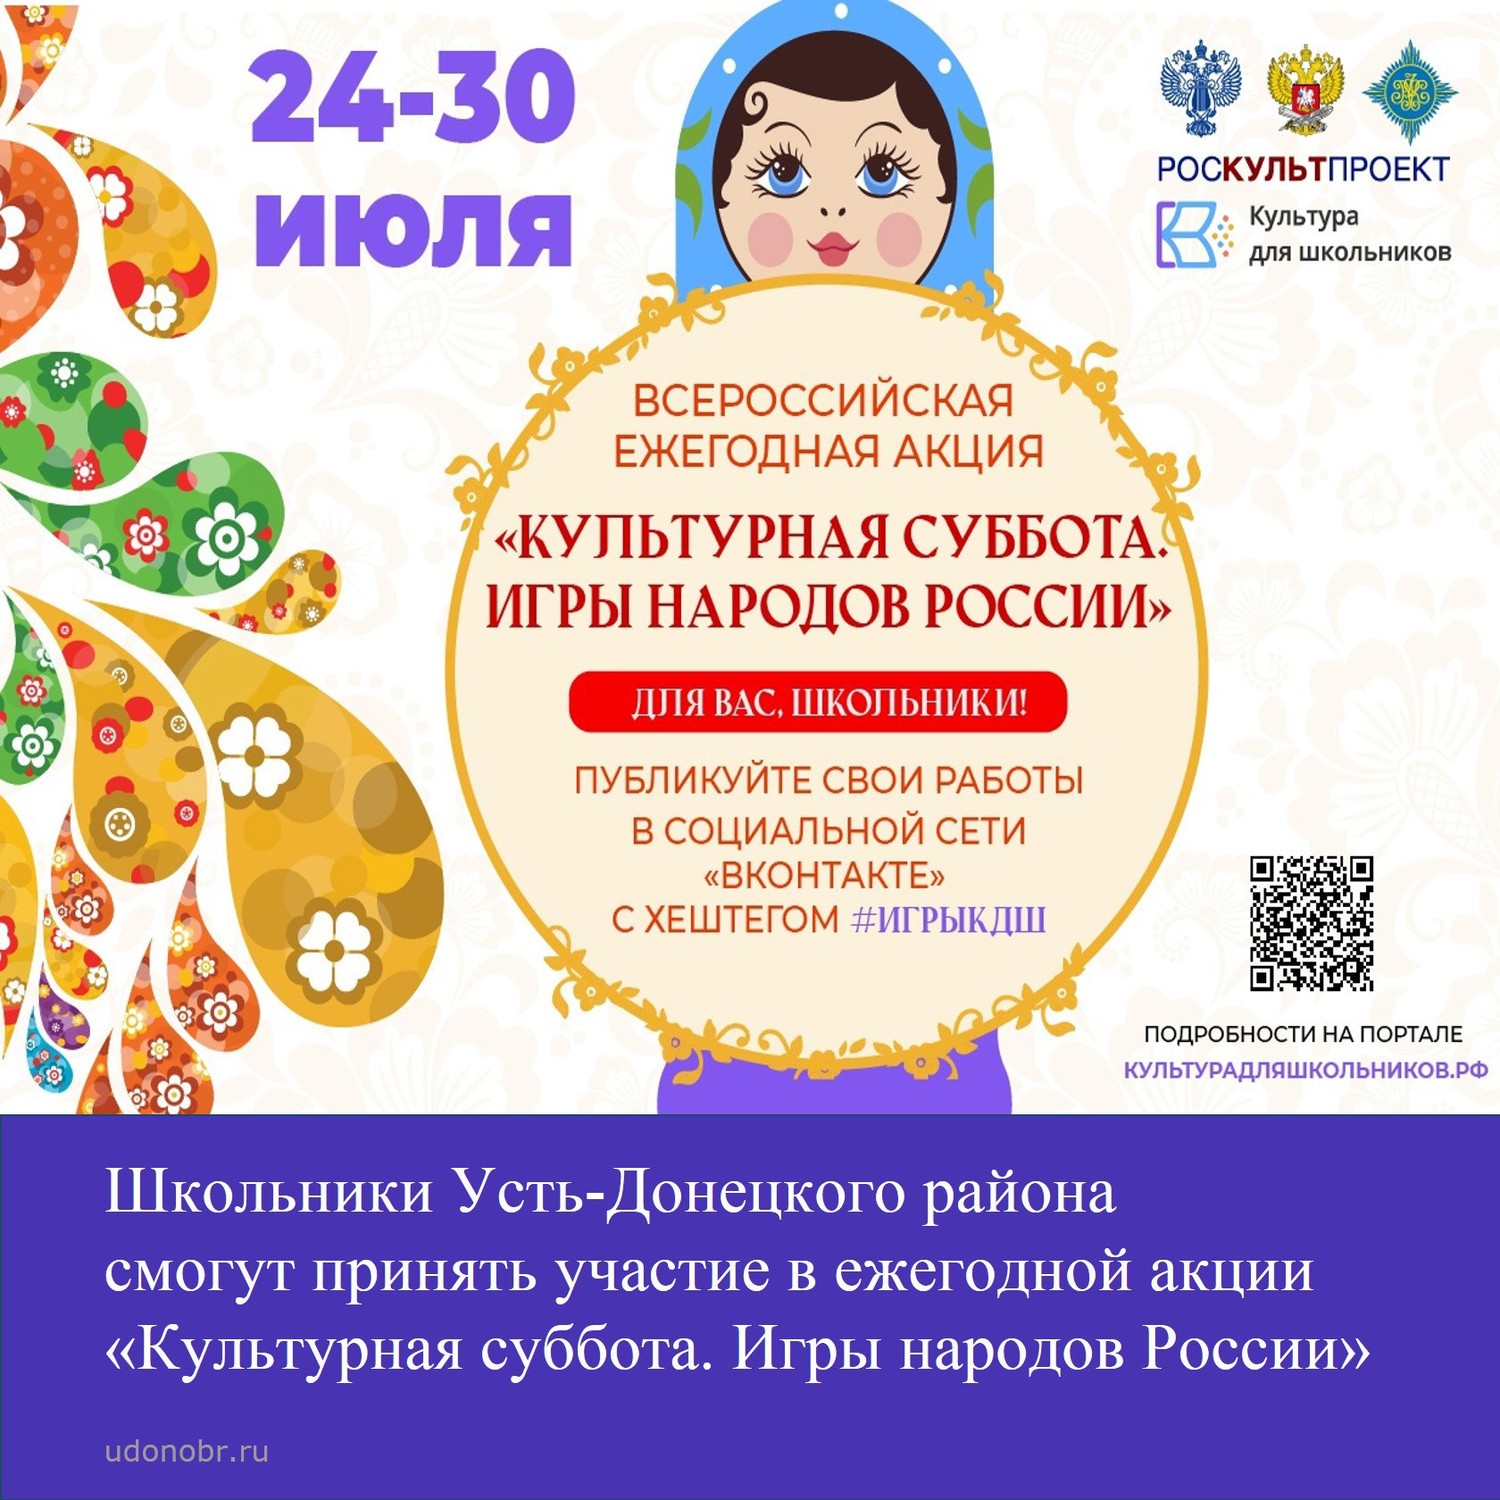 Школьники Усть-Донецкого района смогут принять участие в ежегодной акции «Культурная суббота. Игры народов России»